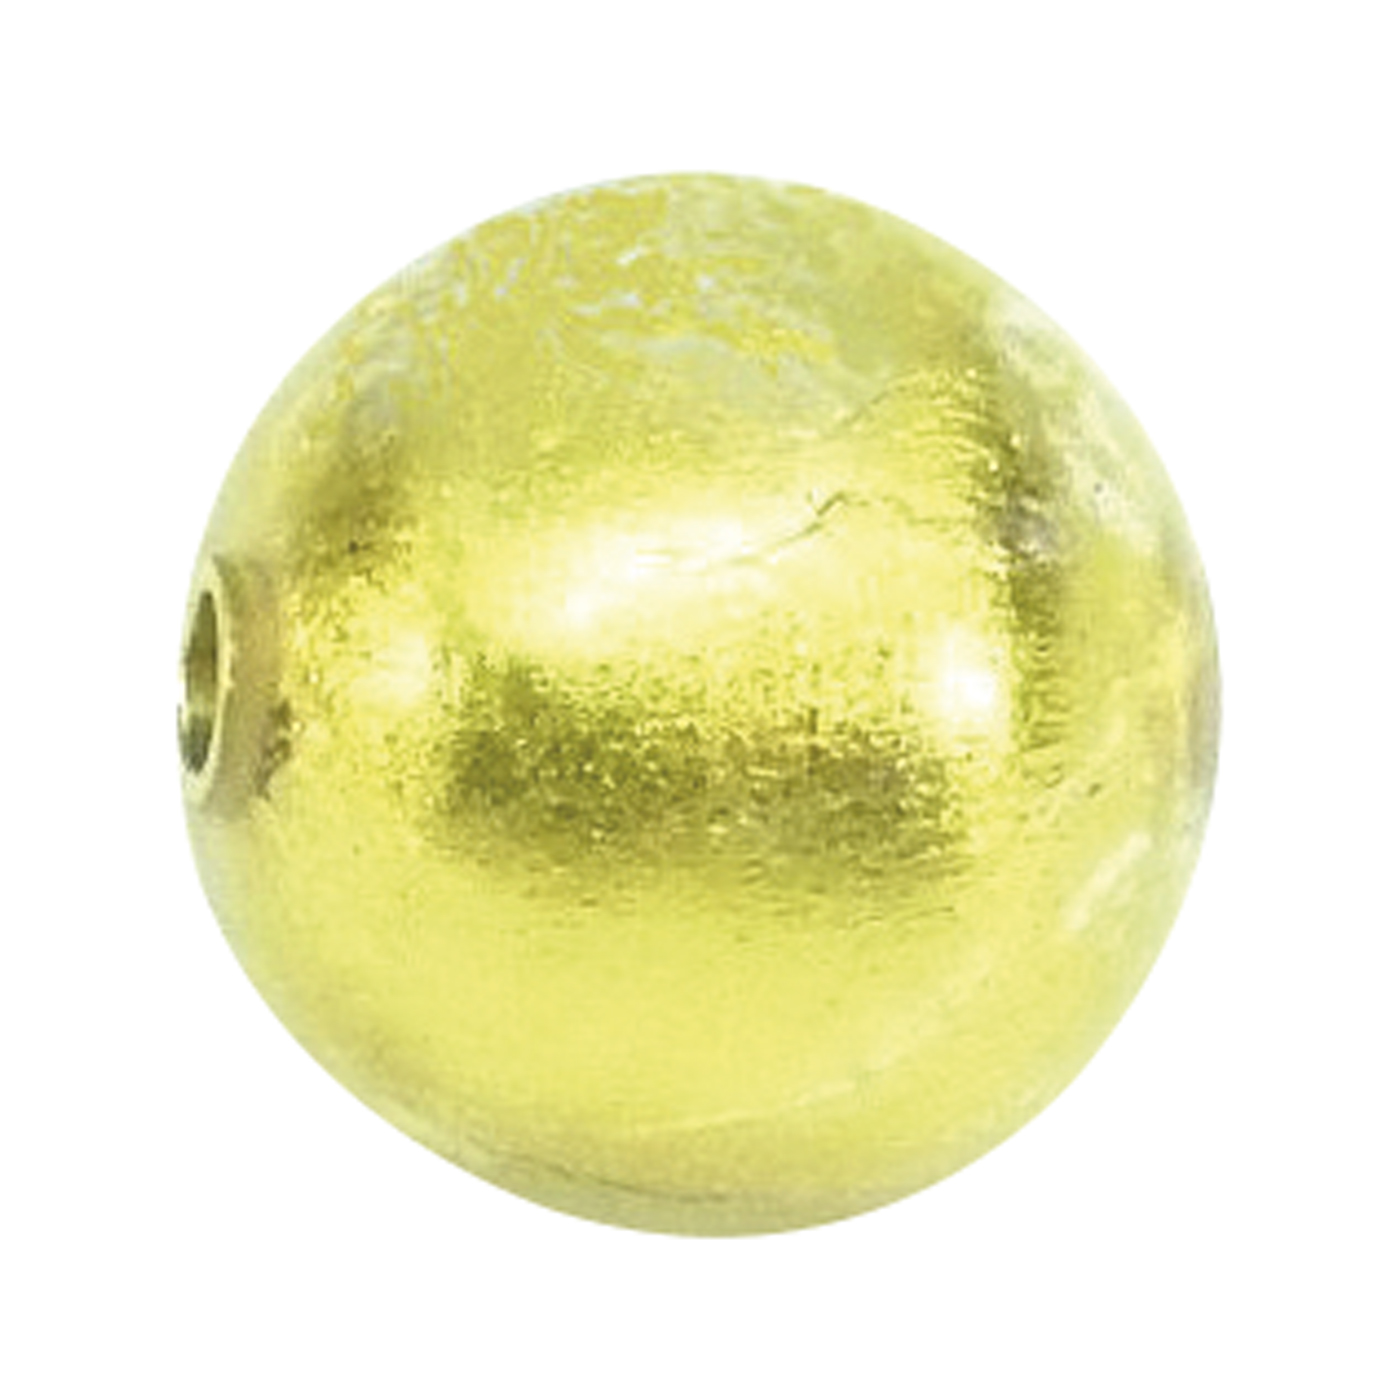 Wechselschließe, Muranoglas, Kugel, gold, ø 12 mm - 1 Stück